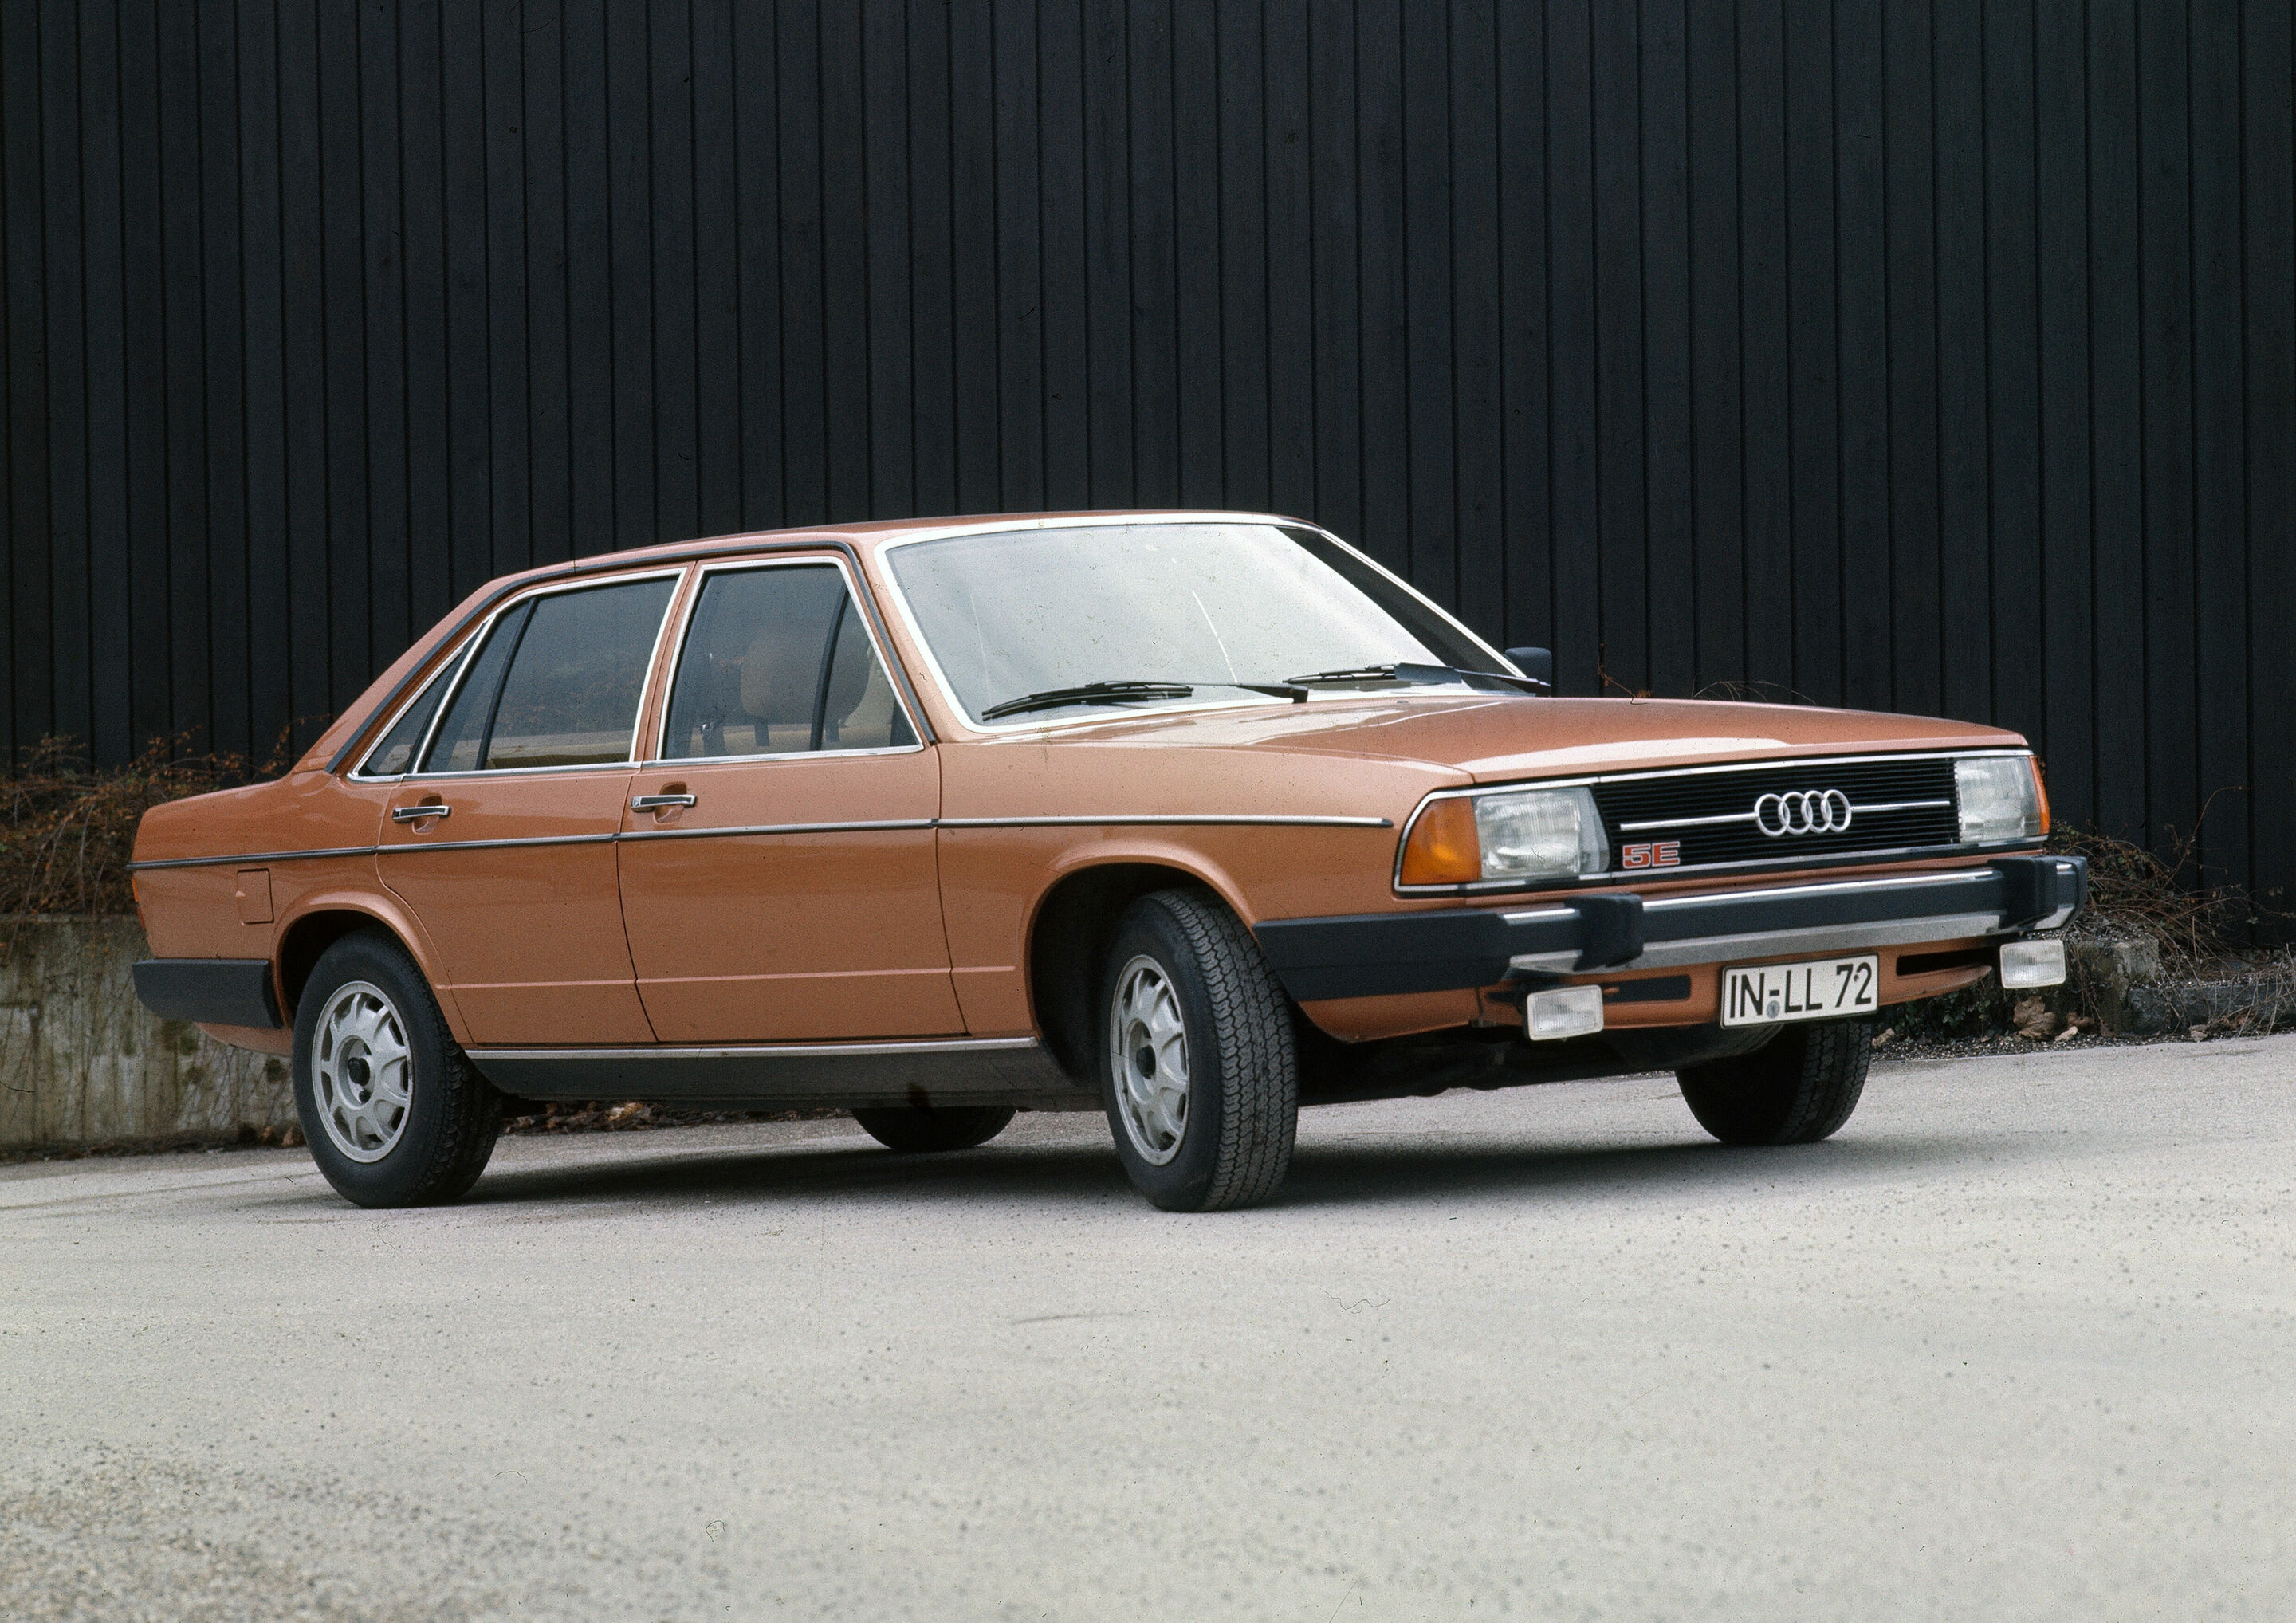 Audi 100 GLS 5E (C2), model year 1979